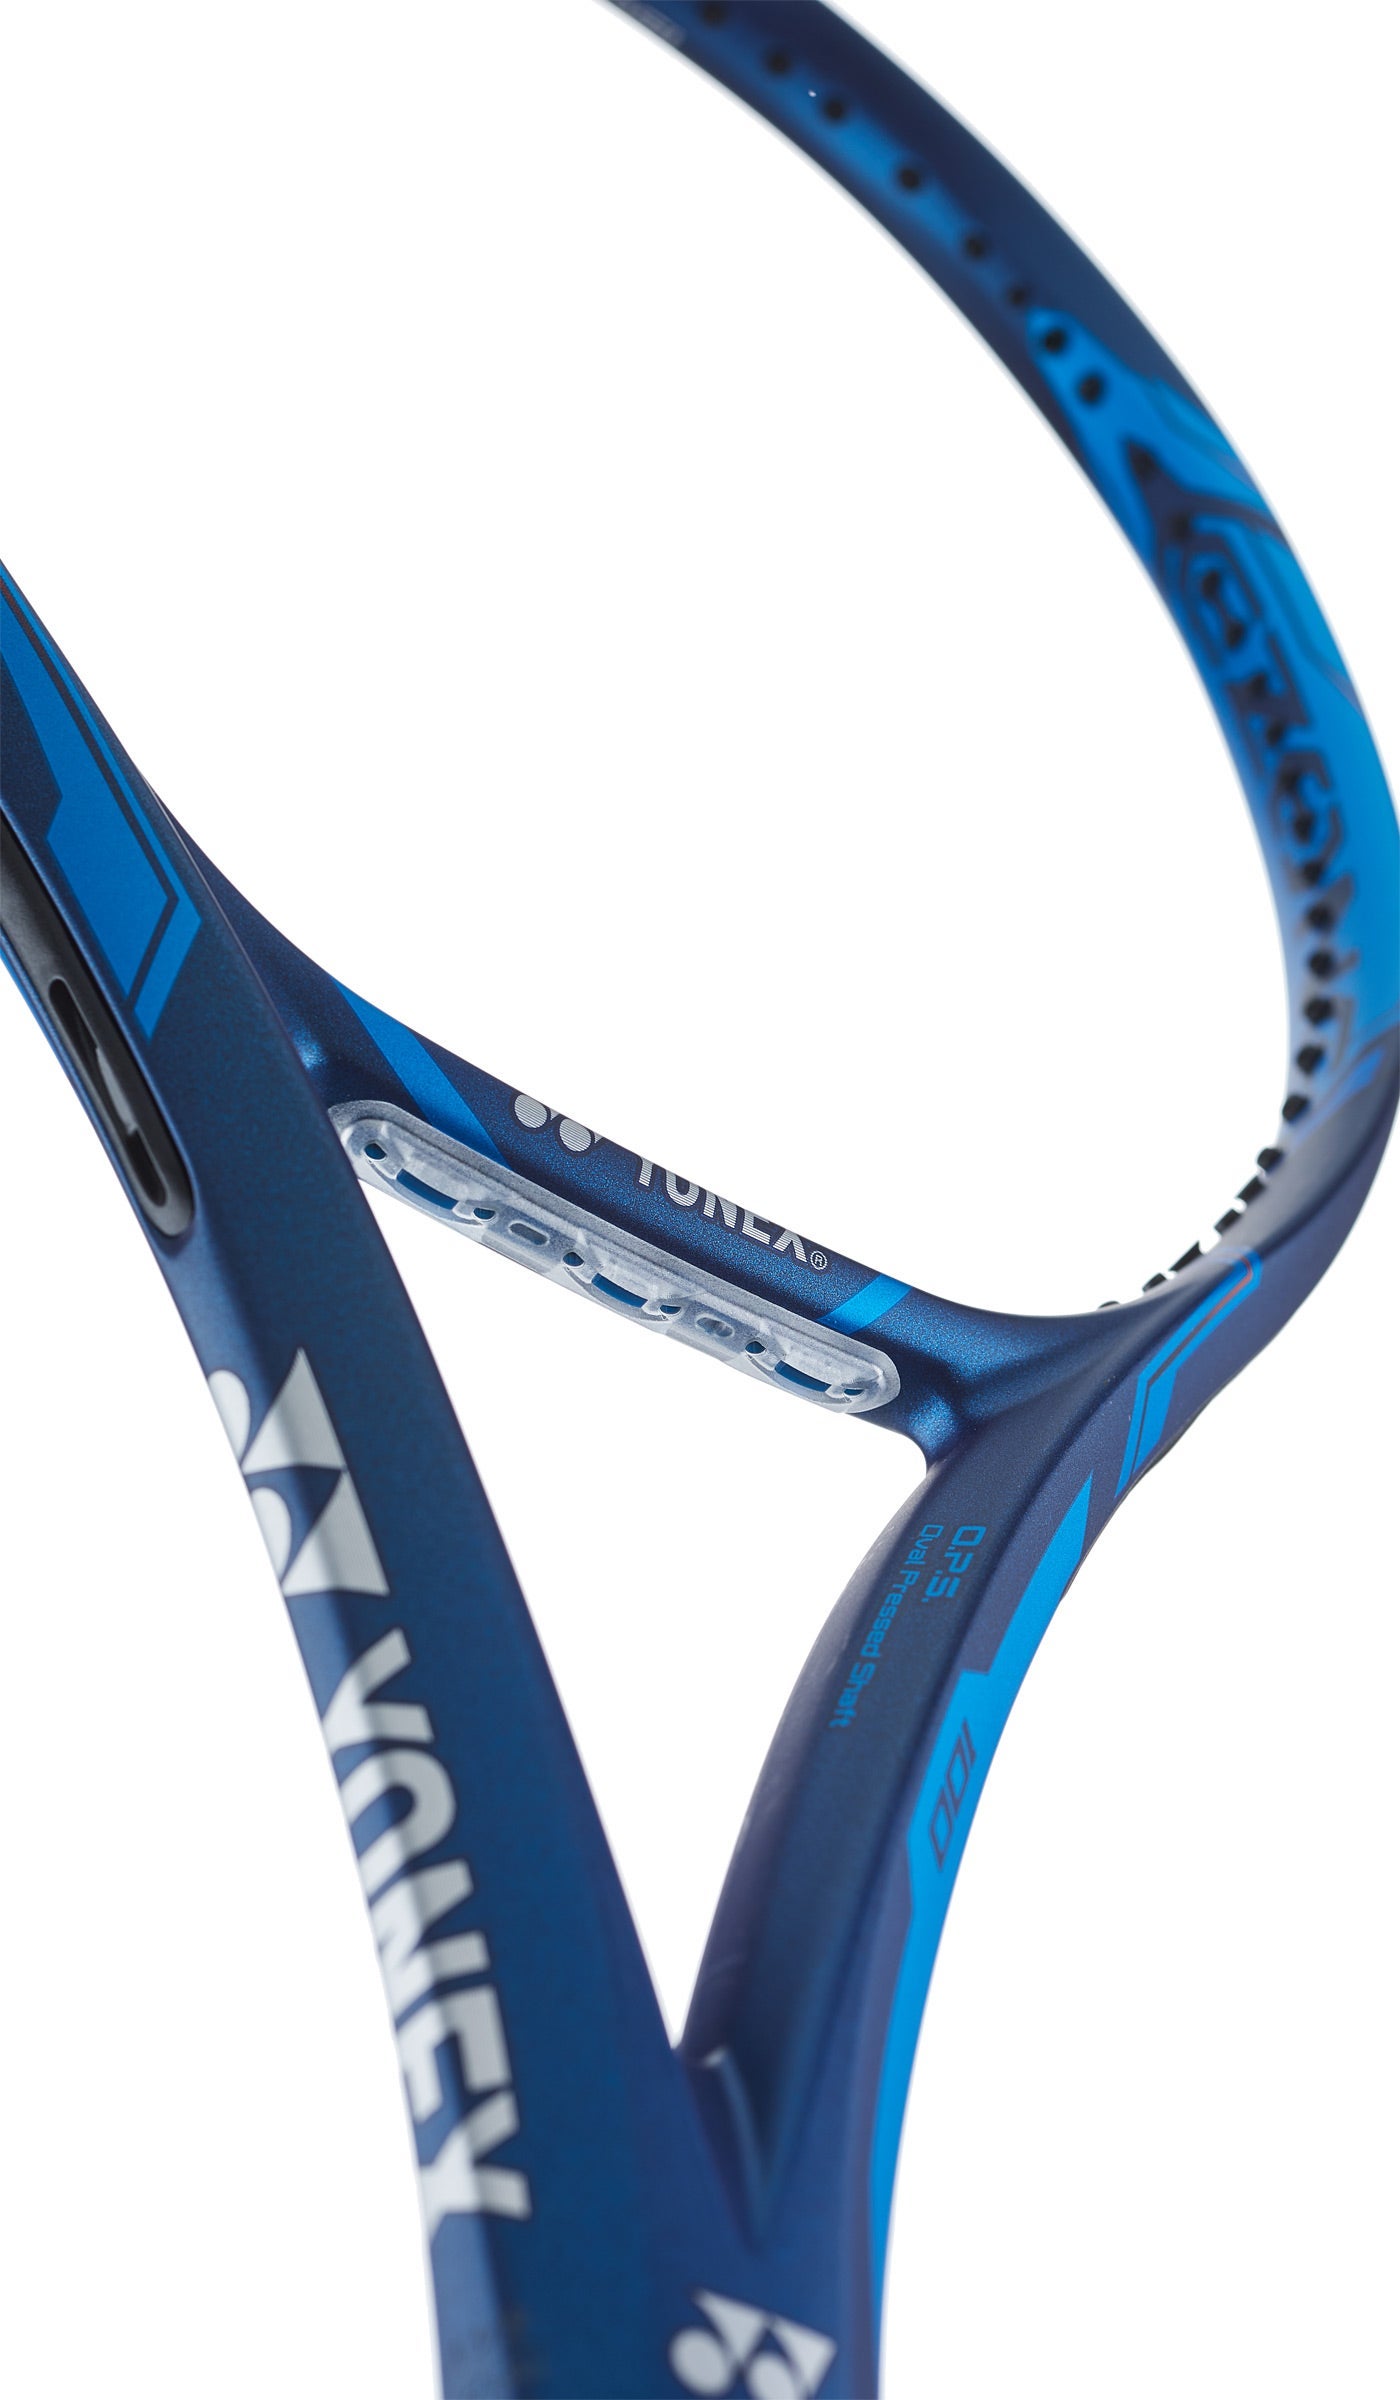 UNSTRUNG Details about   Yonex Tennis Racquet EZONE 100 Lite EZ100L 285g BLUE G1 4-1/8" 